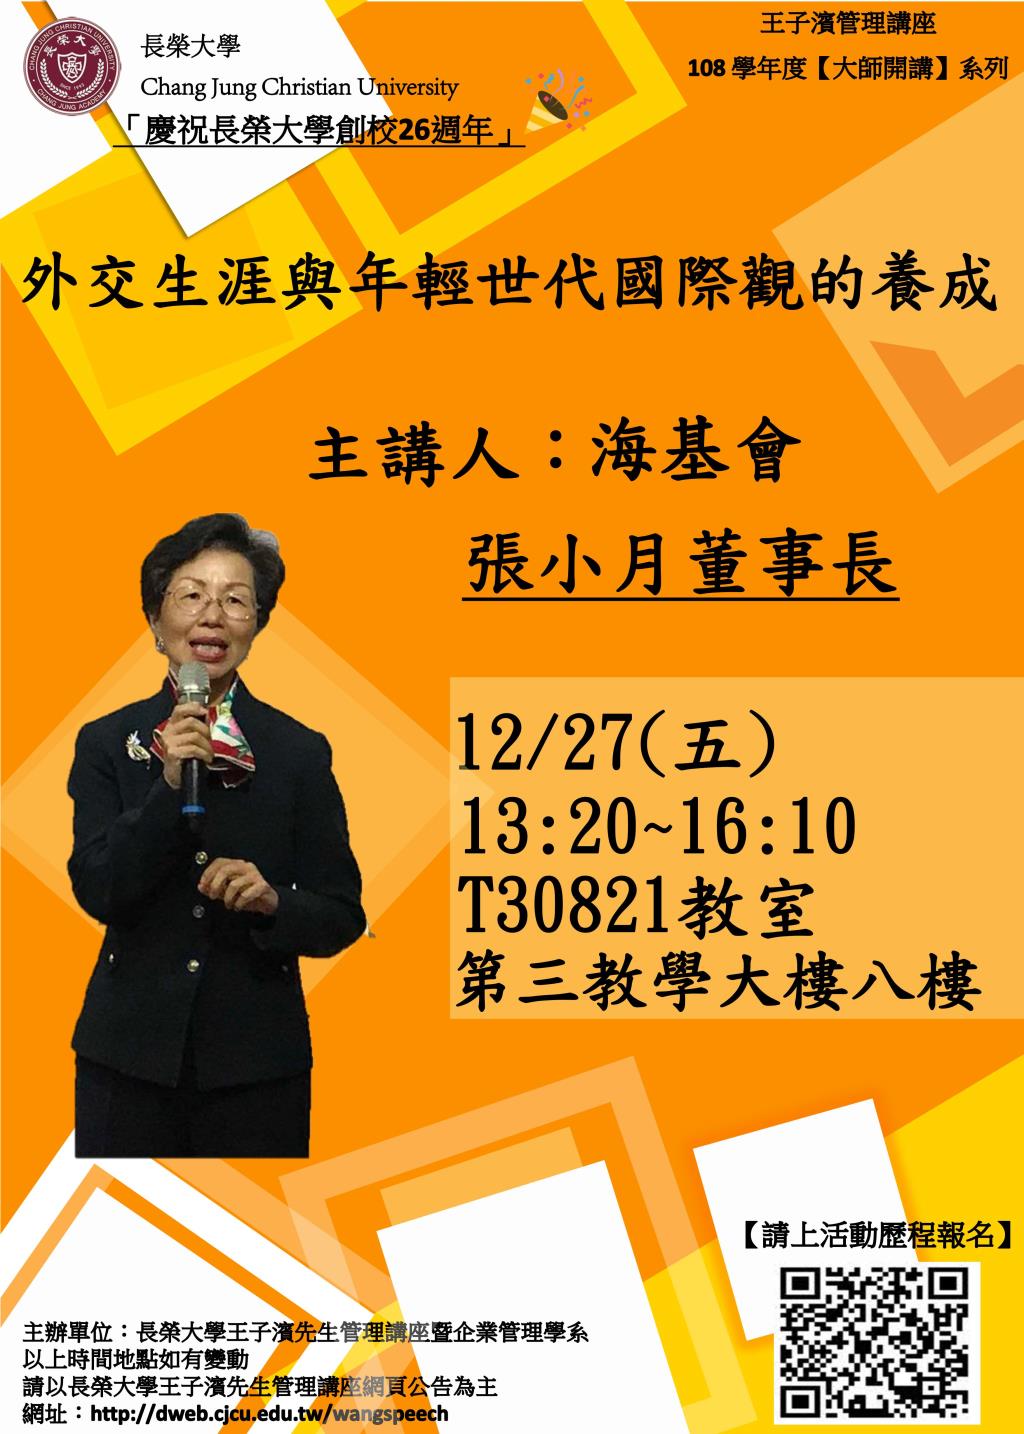 敬邀參加本週五下午(12/27)王子濱先生管理講---海基會 張小月董事長